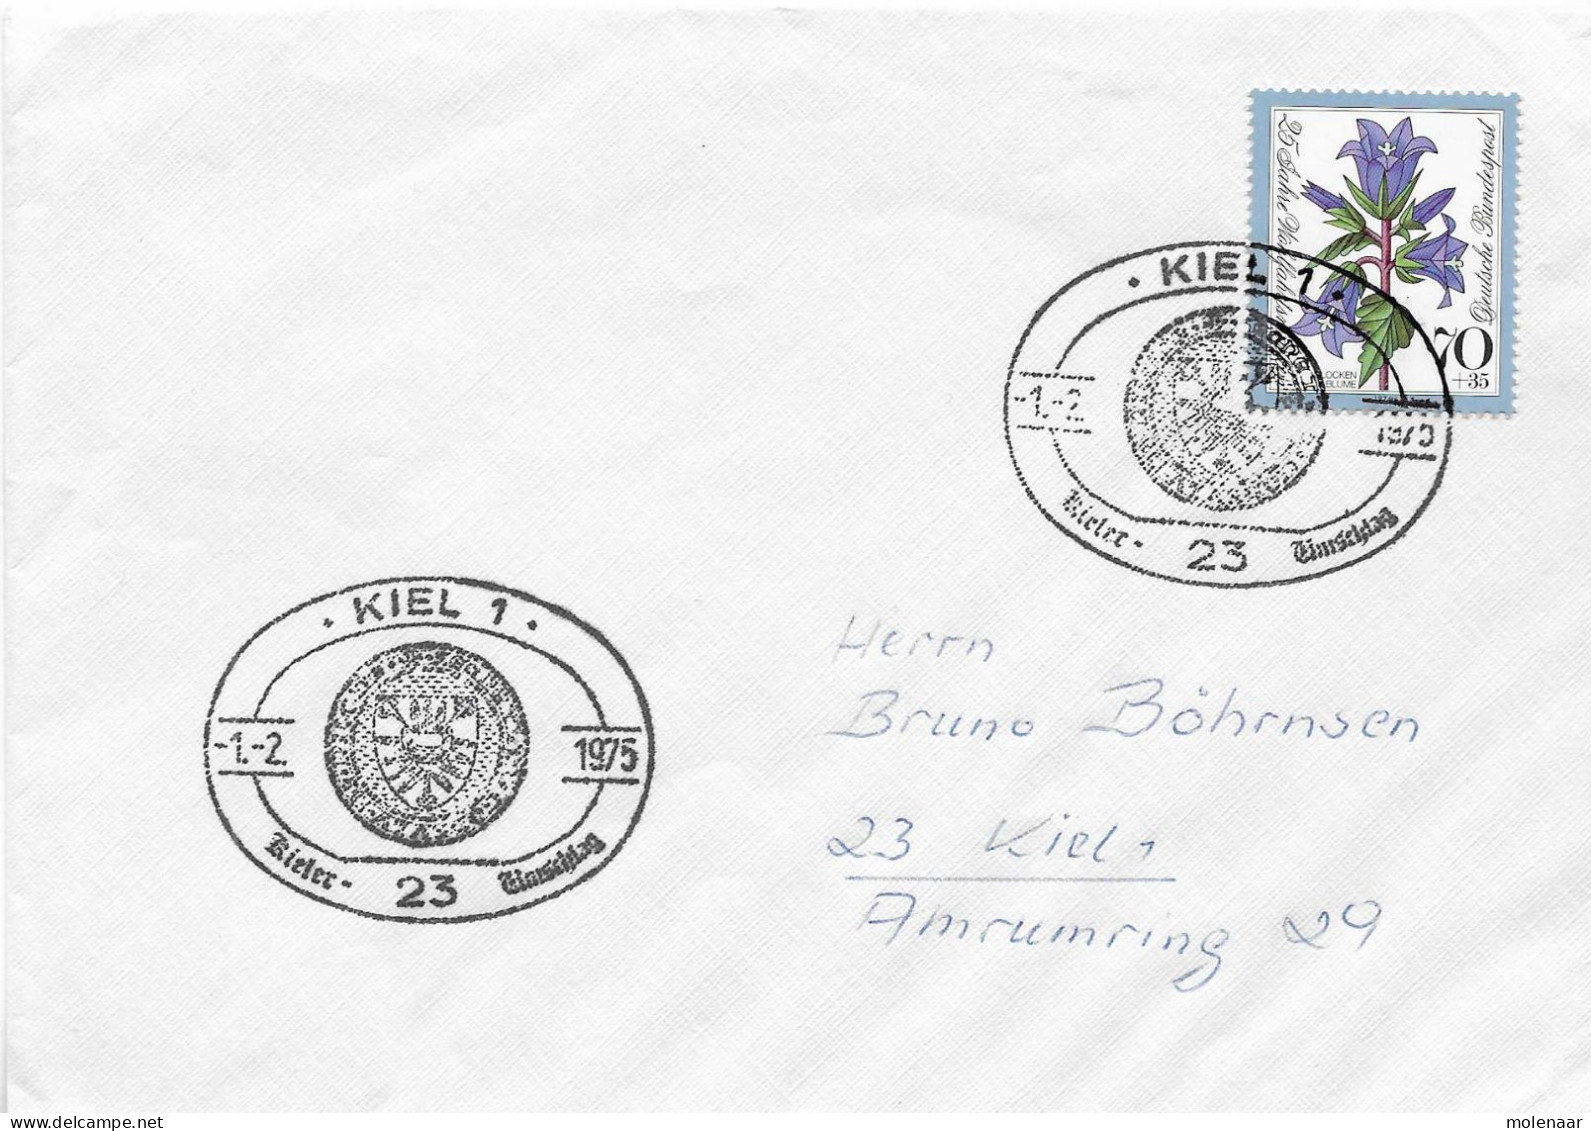 Postzegels > Europa > Duitsland > West-Duitsland > 1970-1979 > Brief Met No. 821 (17299) - Brieven En Documenten